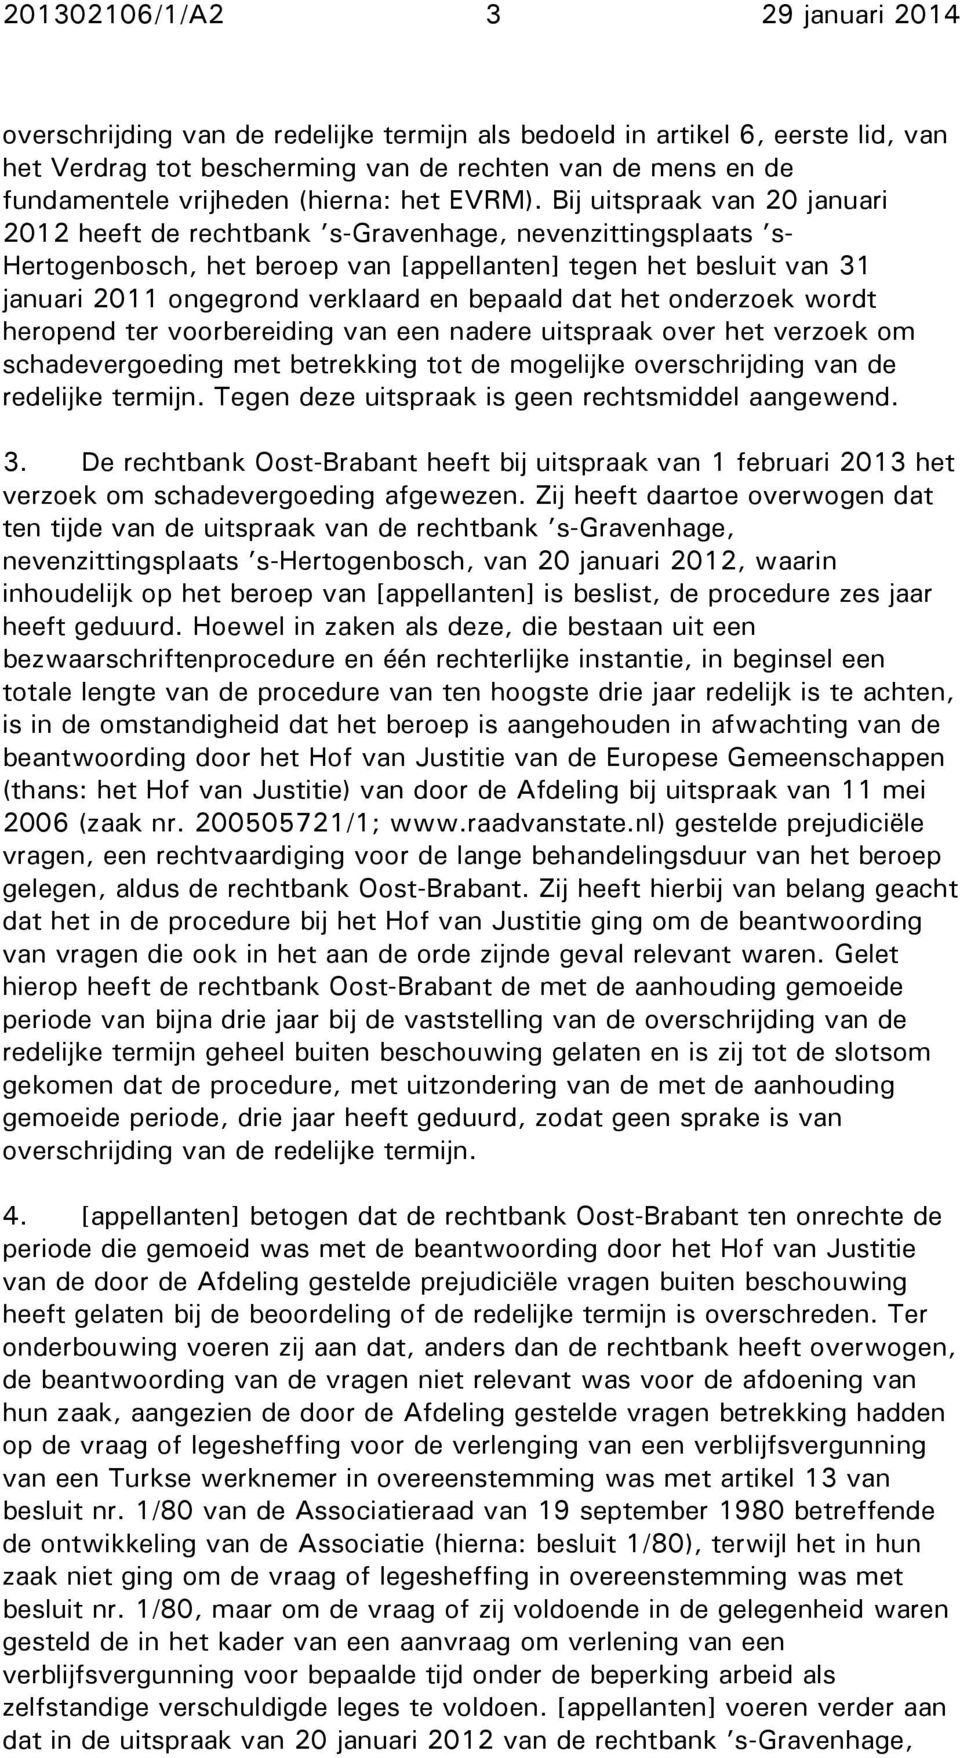 Bij uitspraak van 20 januari 2012 heeft de rechtbank s-gravenhage, nevenzittingsplaats s- Hertogenbosch, het beroep van [appellanten] tegen het besluit van 31 januari 2011 ongegrond verklaard en